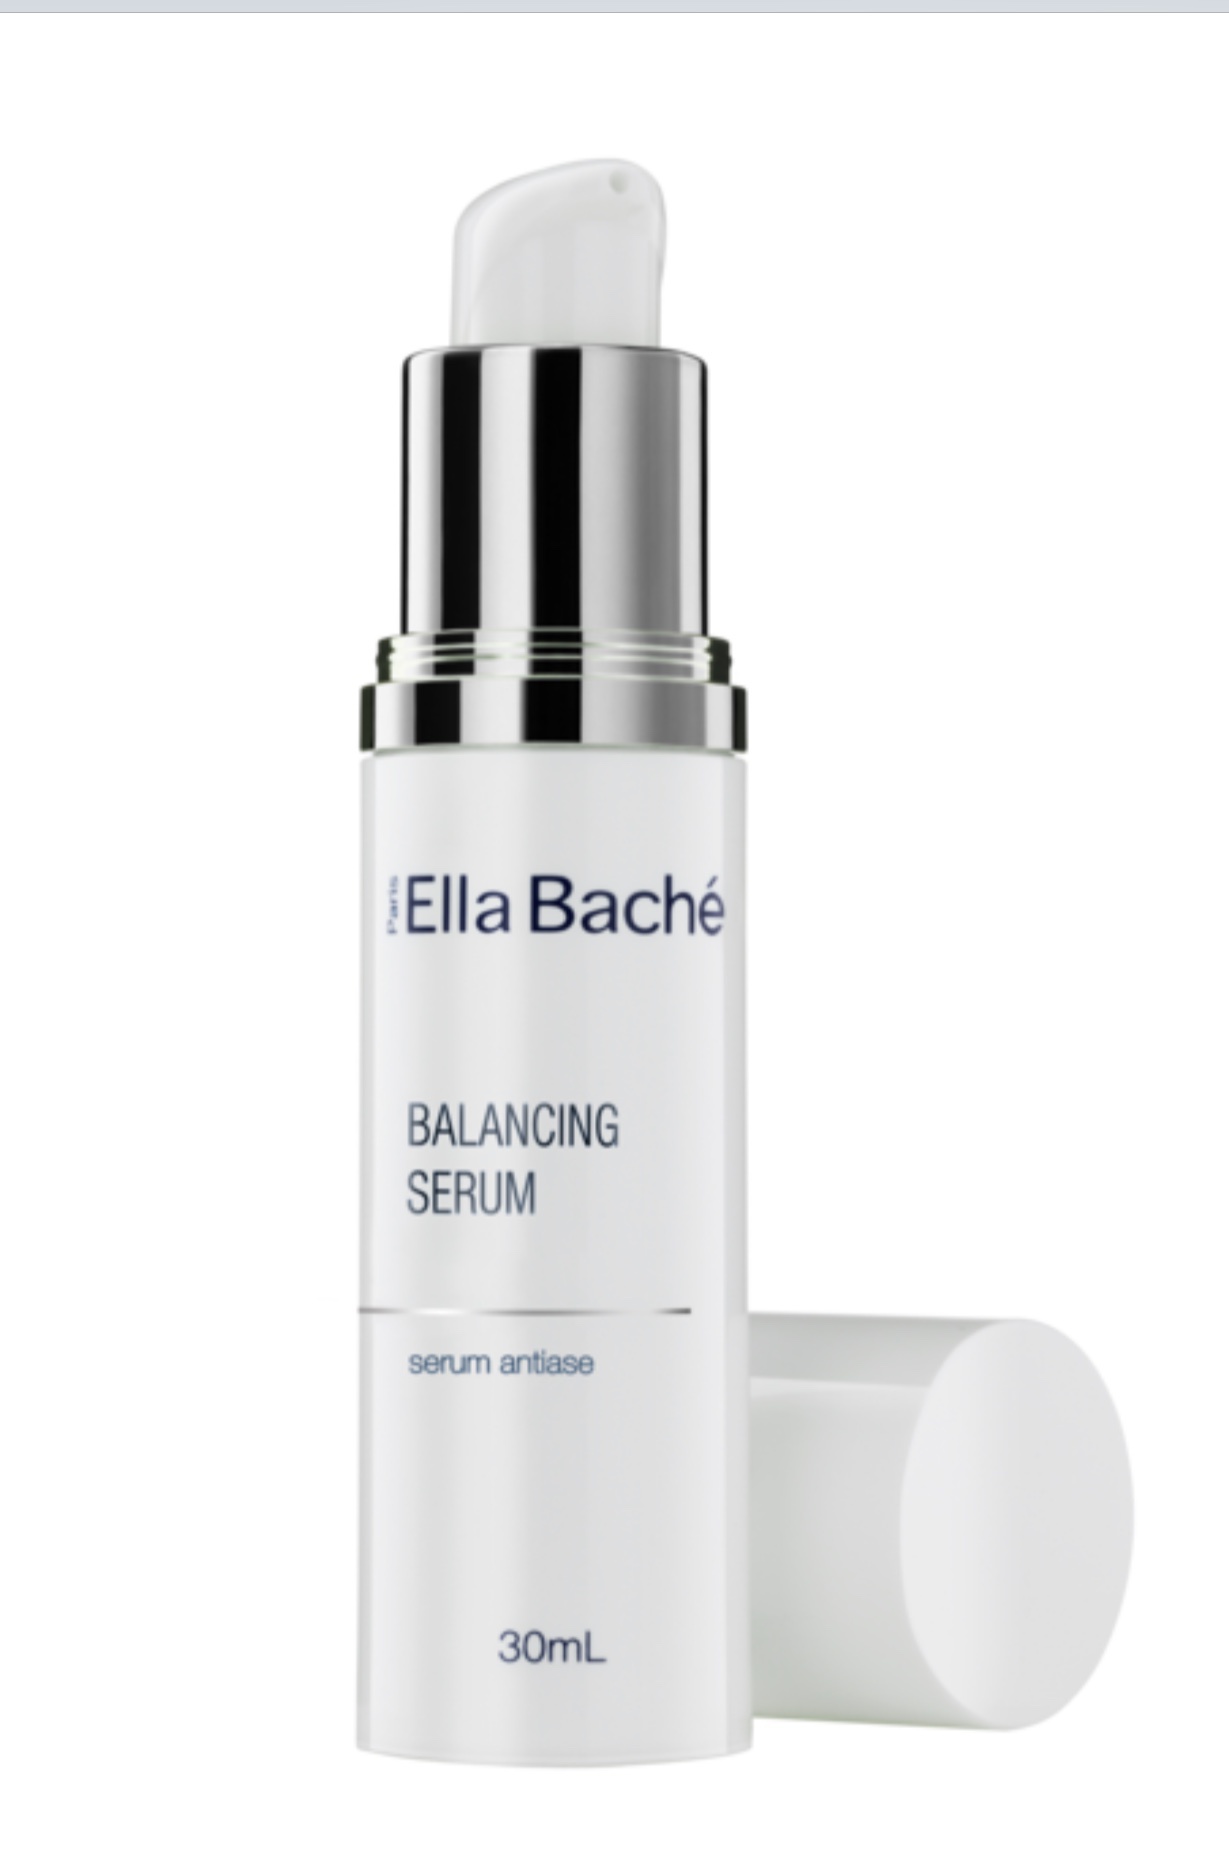 Ella Baché Balancing Serum (Serum Antiase)